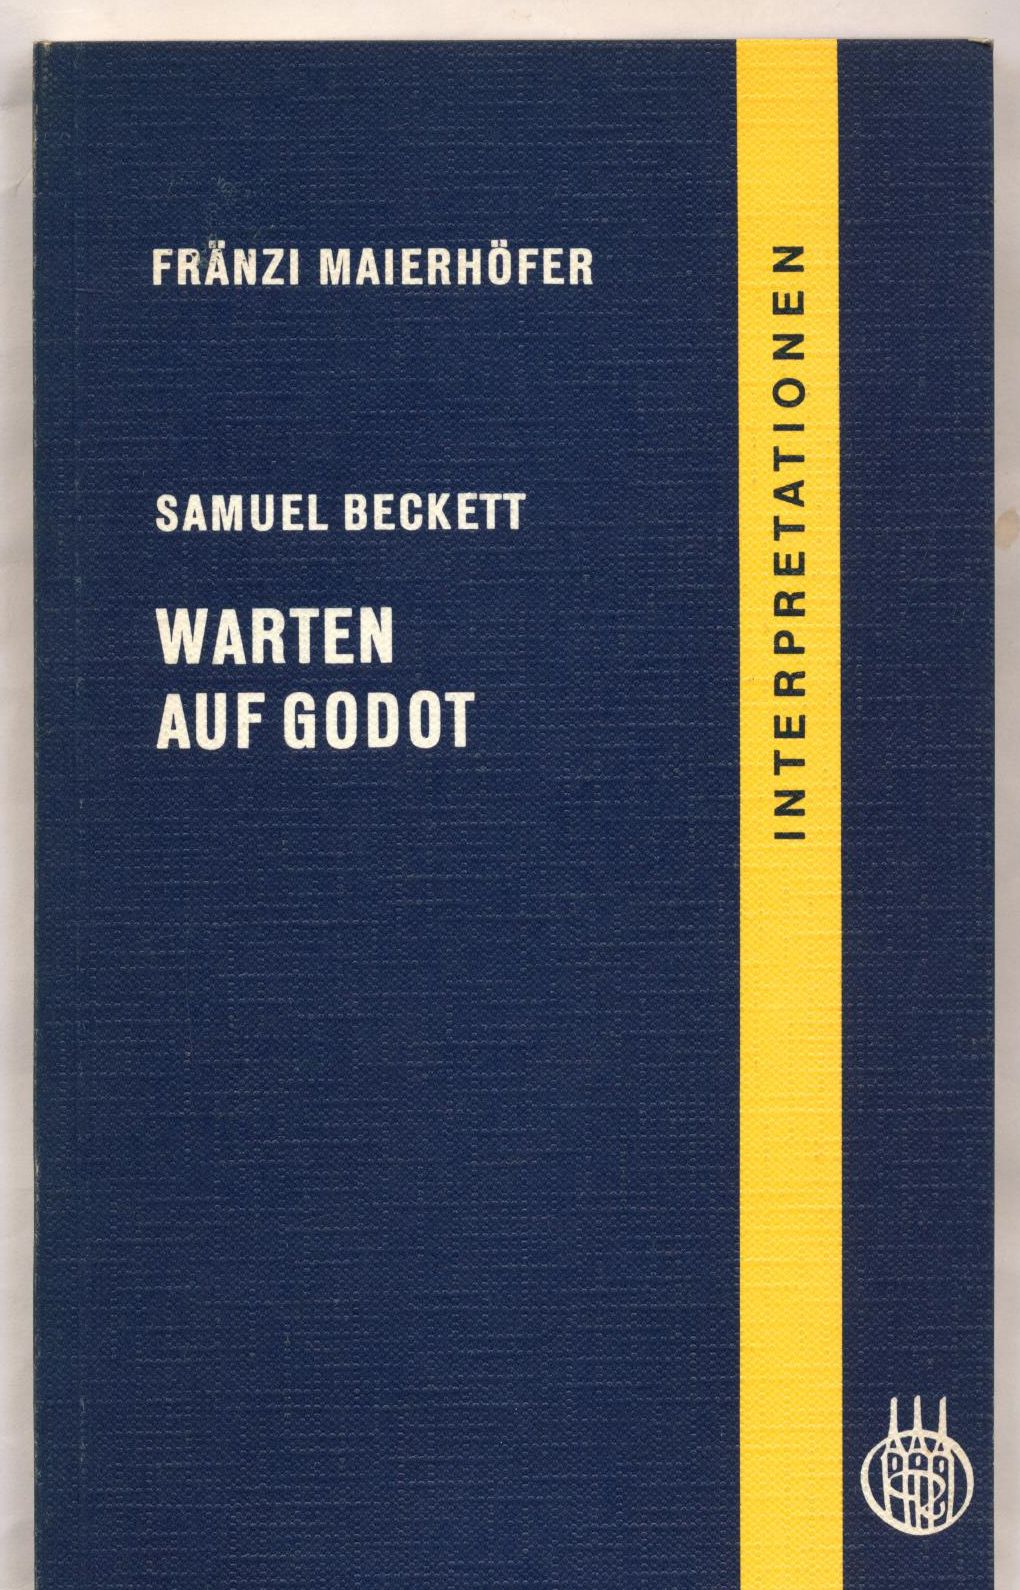 Samuel Beckett, Warten auf Godot Interpretation - Maierhöfer, Fränzi